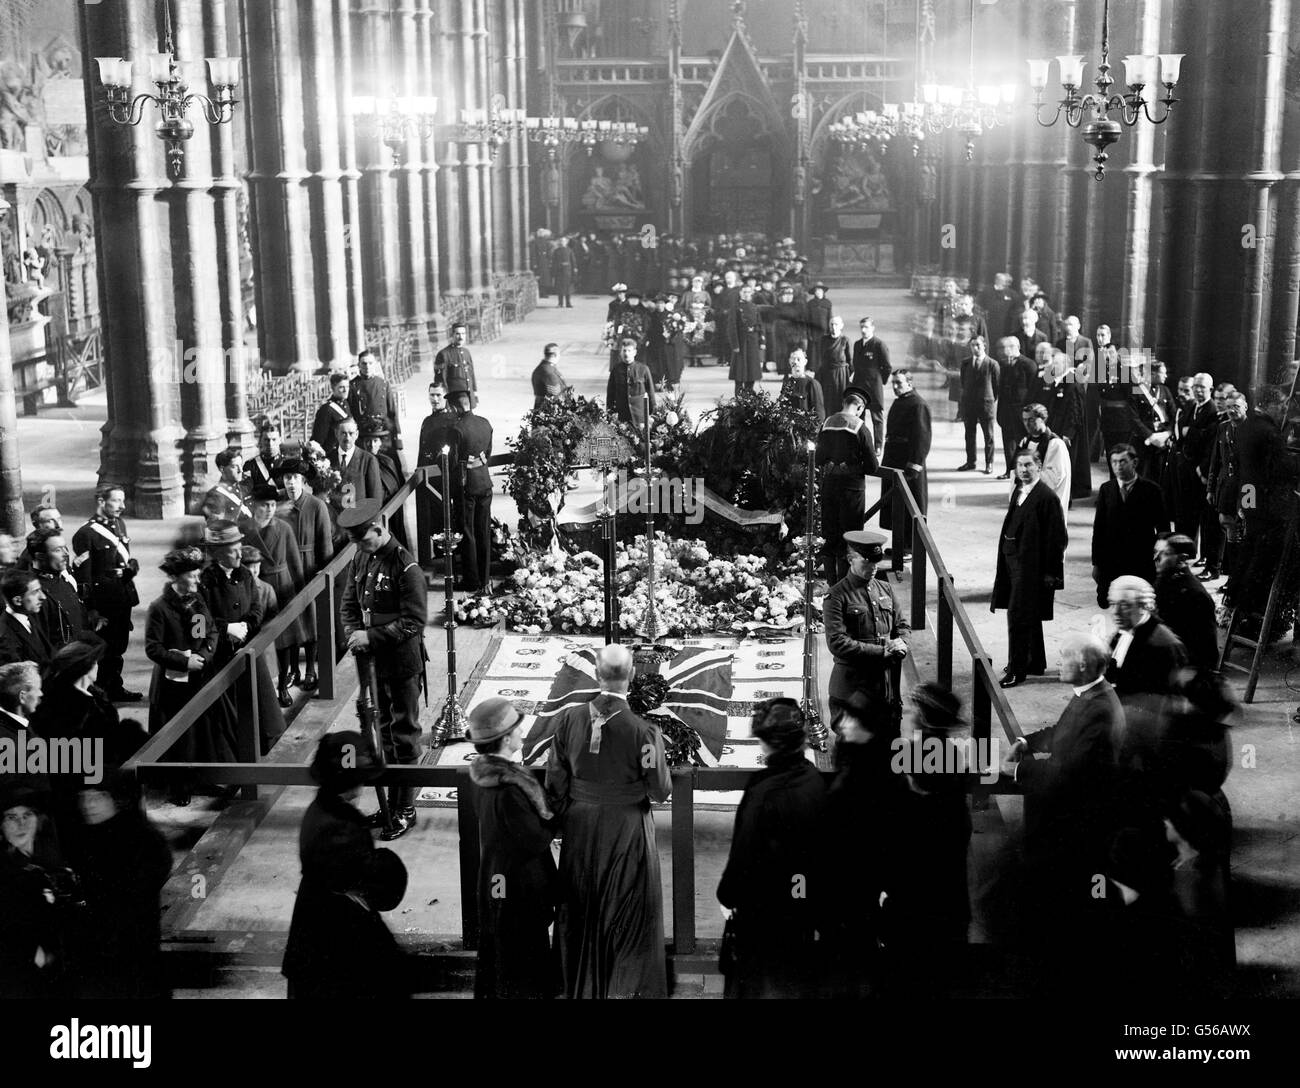 Punti di riferimento - la sepoltura del guerriero sconosciuto - Abbazia di Westminster - 1920 Foto Stock